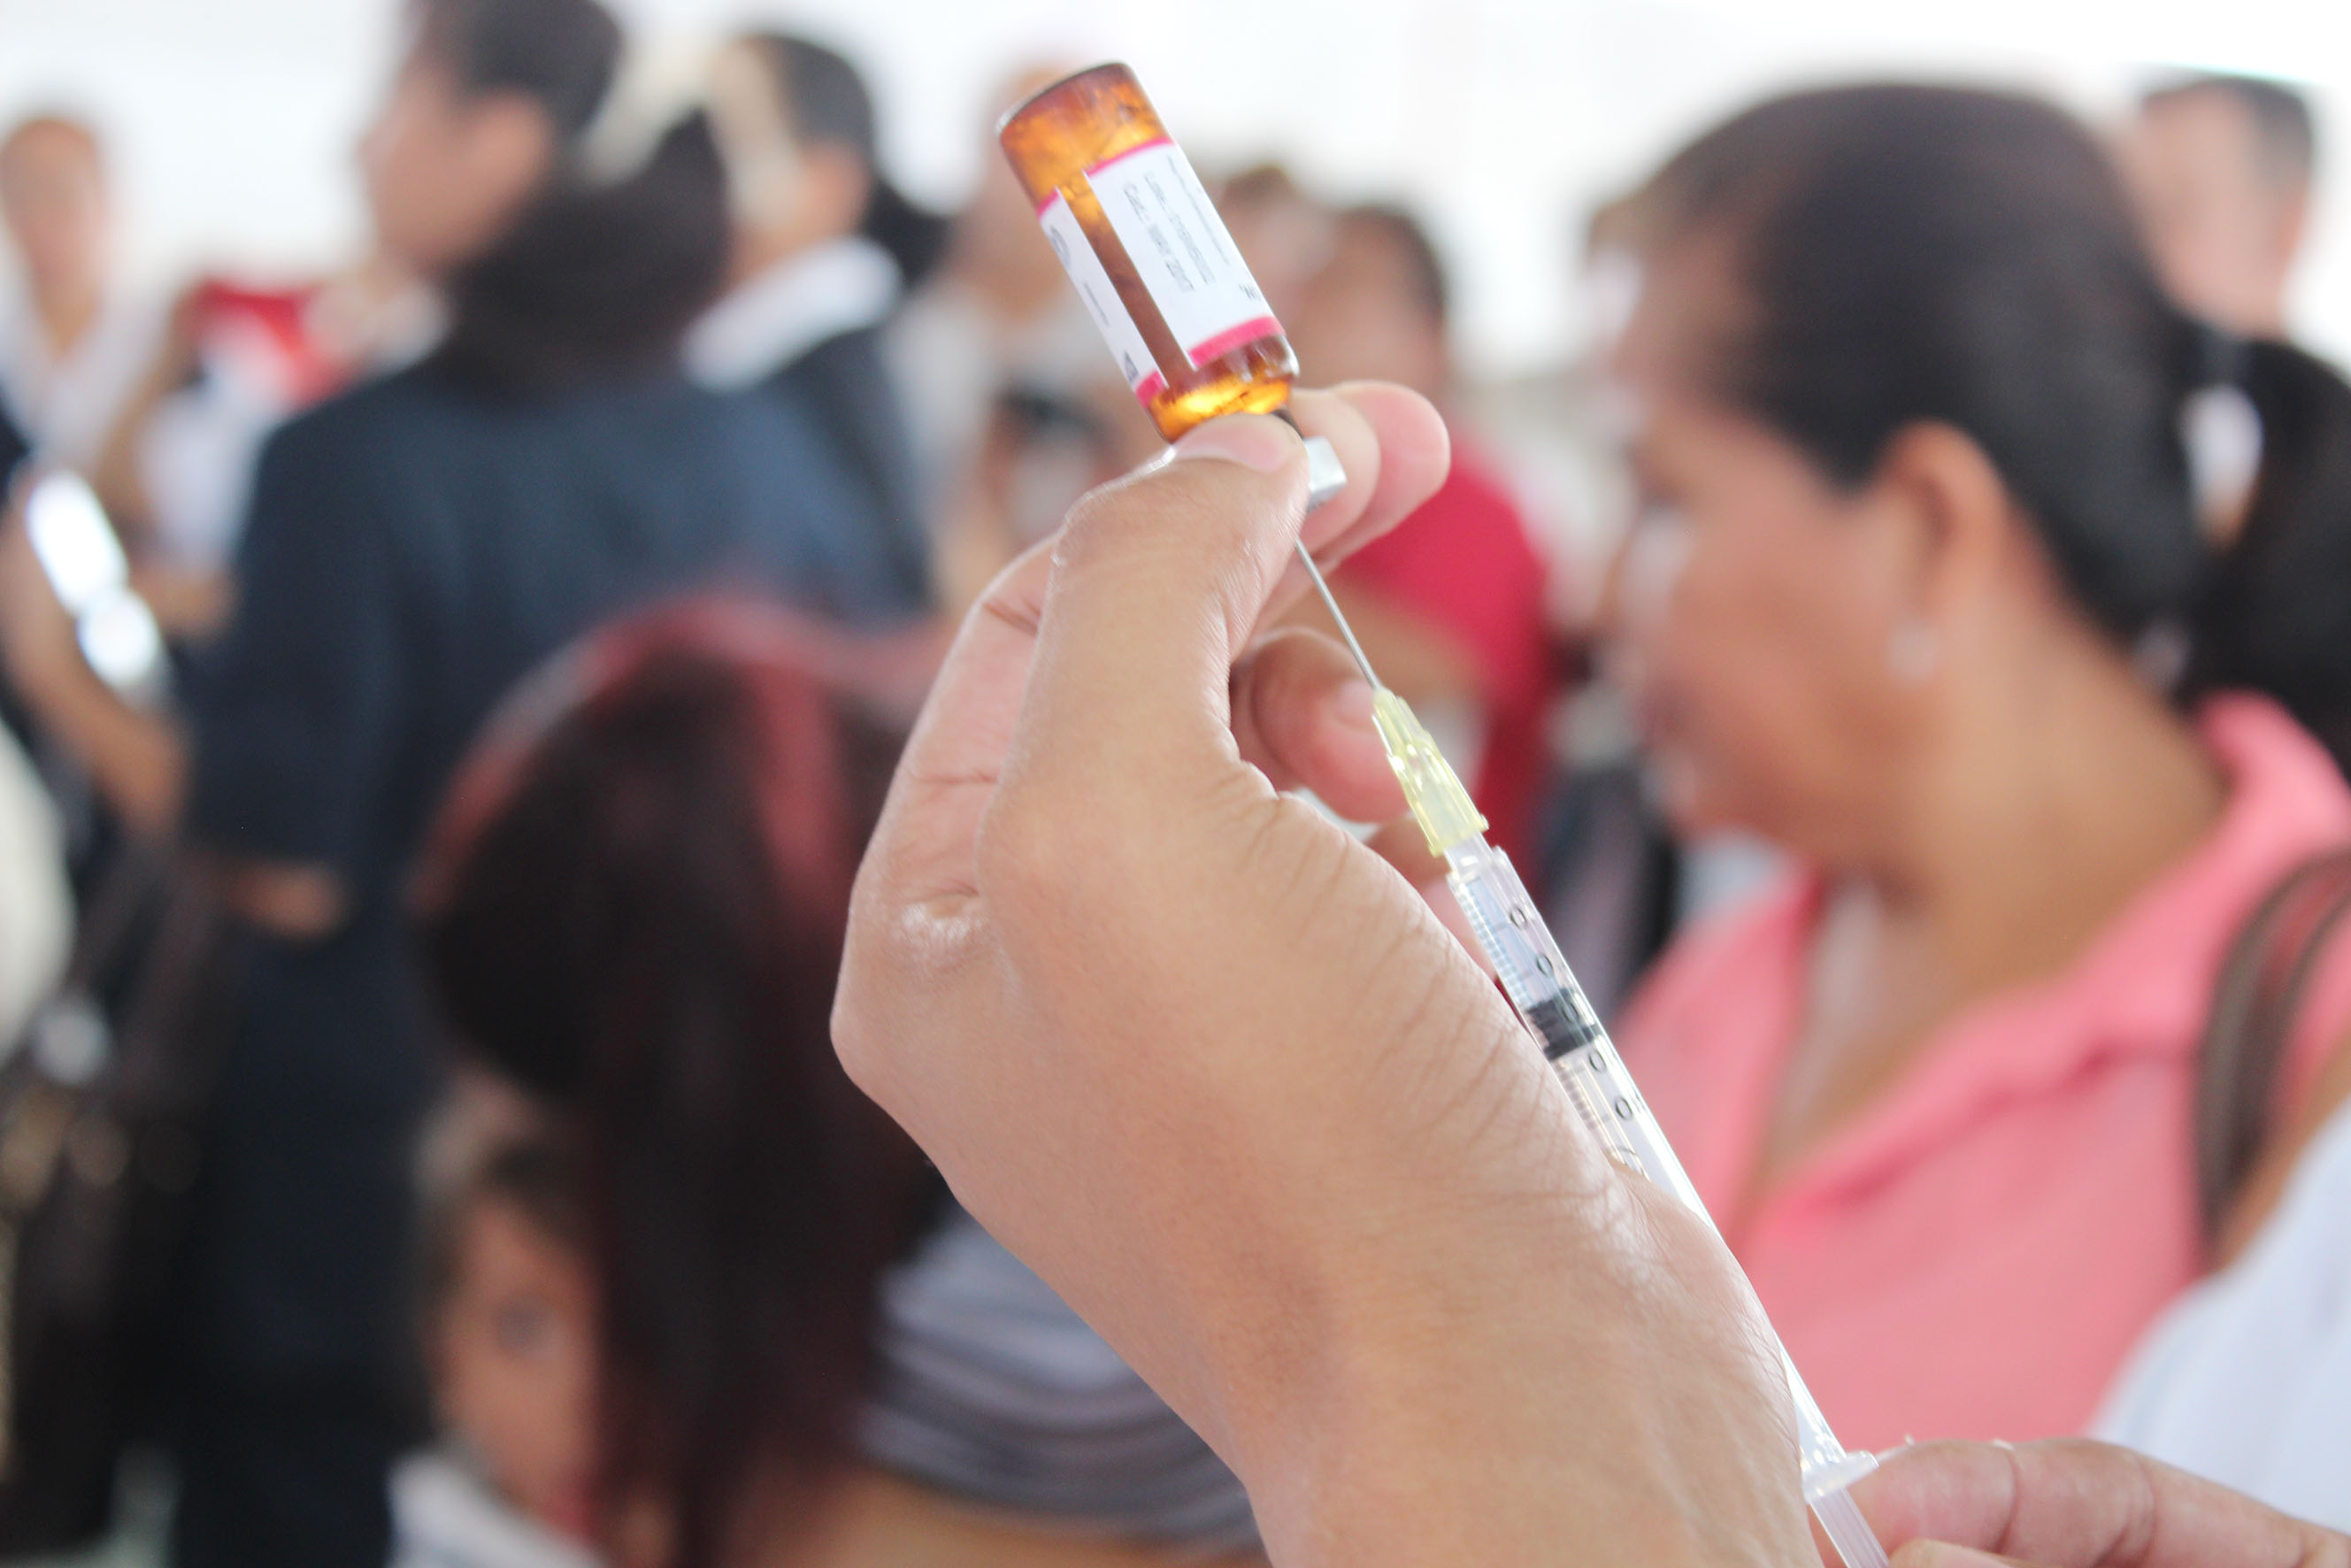  Suman 8510 casos de influenza en México: SSa